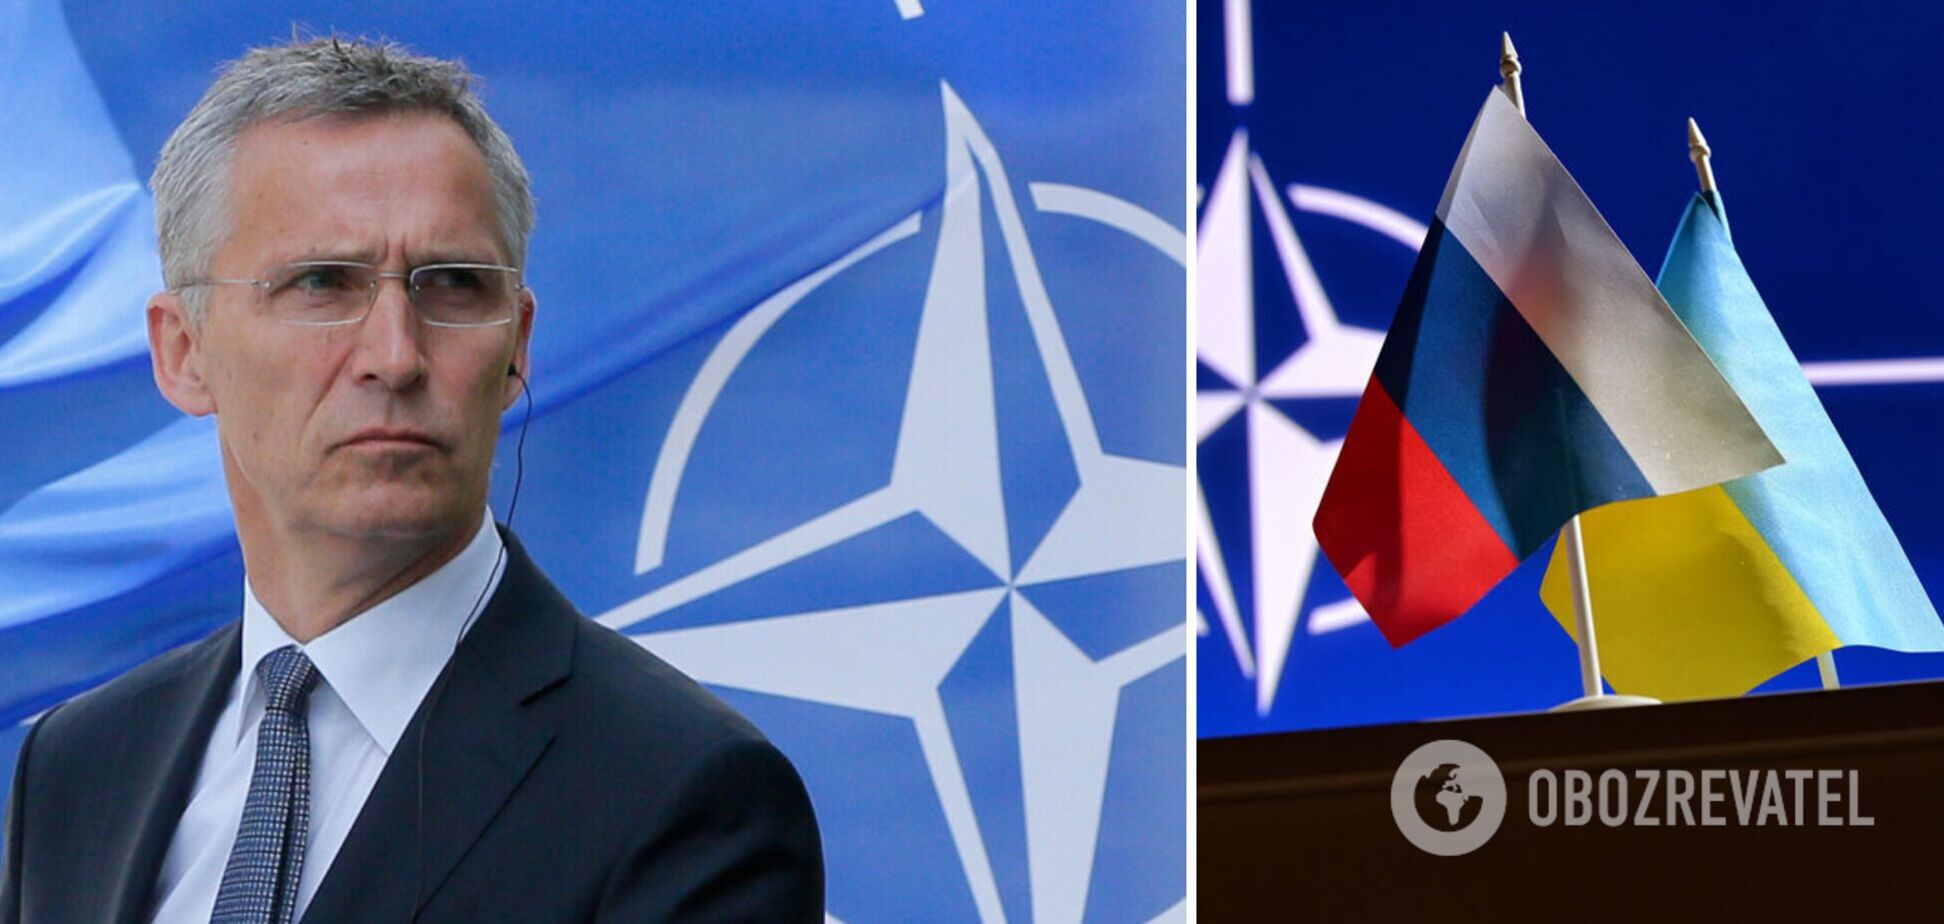  НАТО планирует в разы увеличить численность своих войск